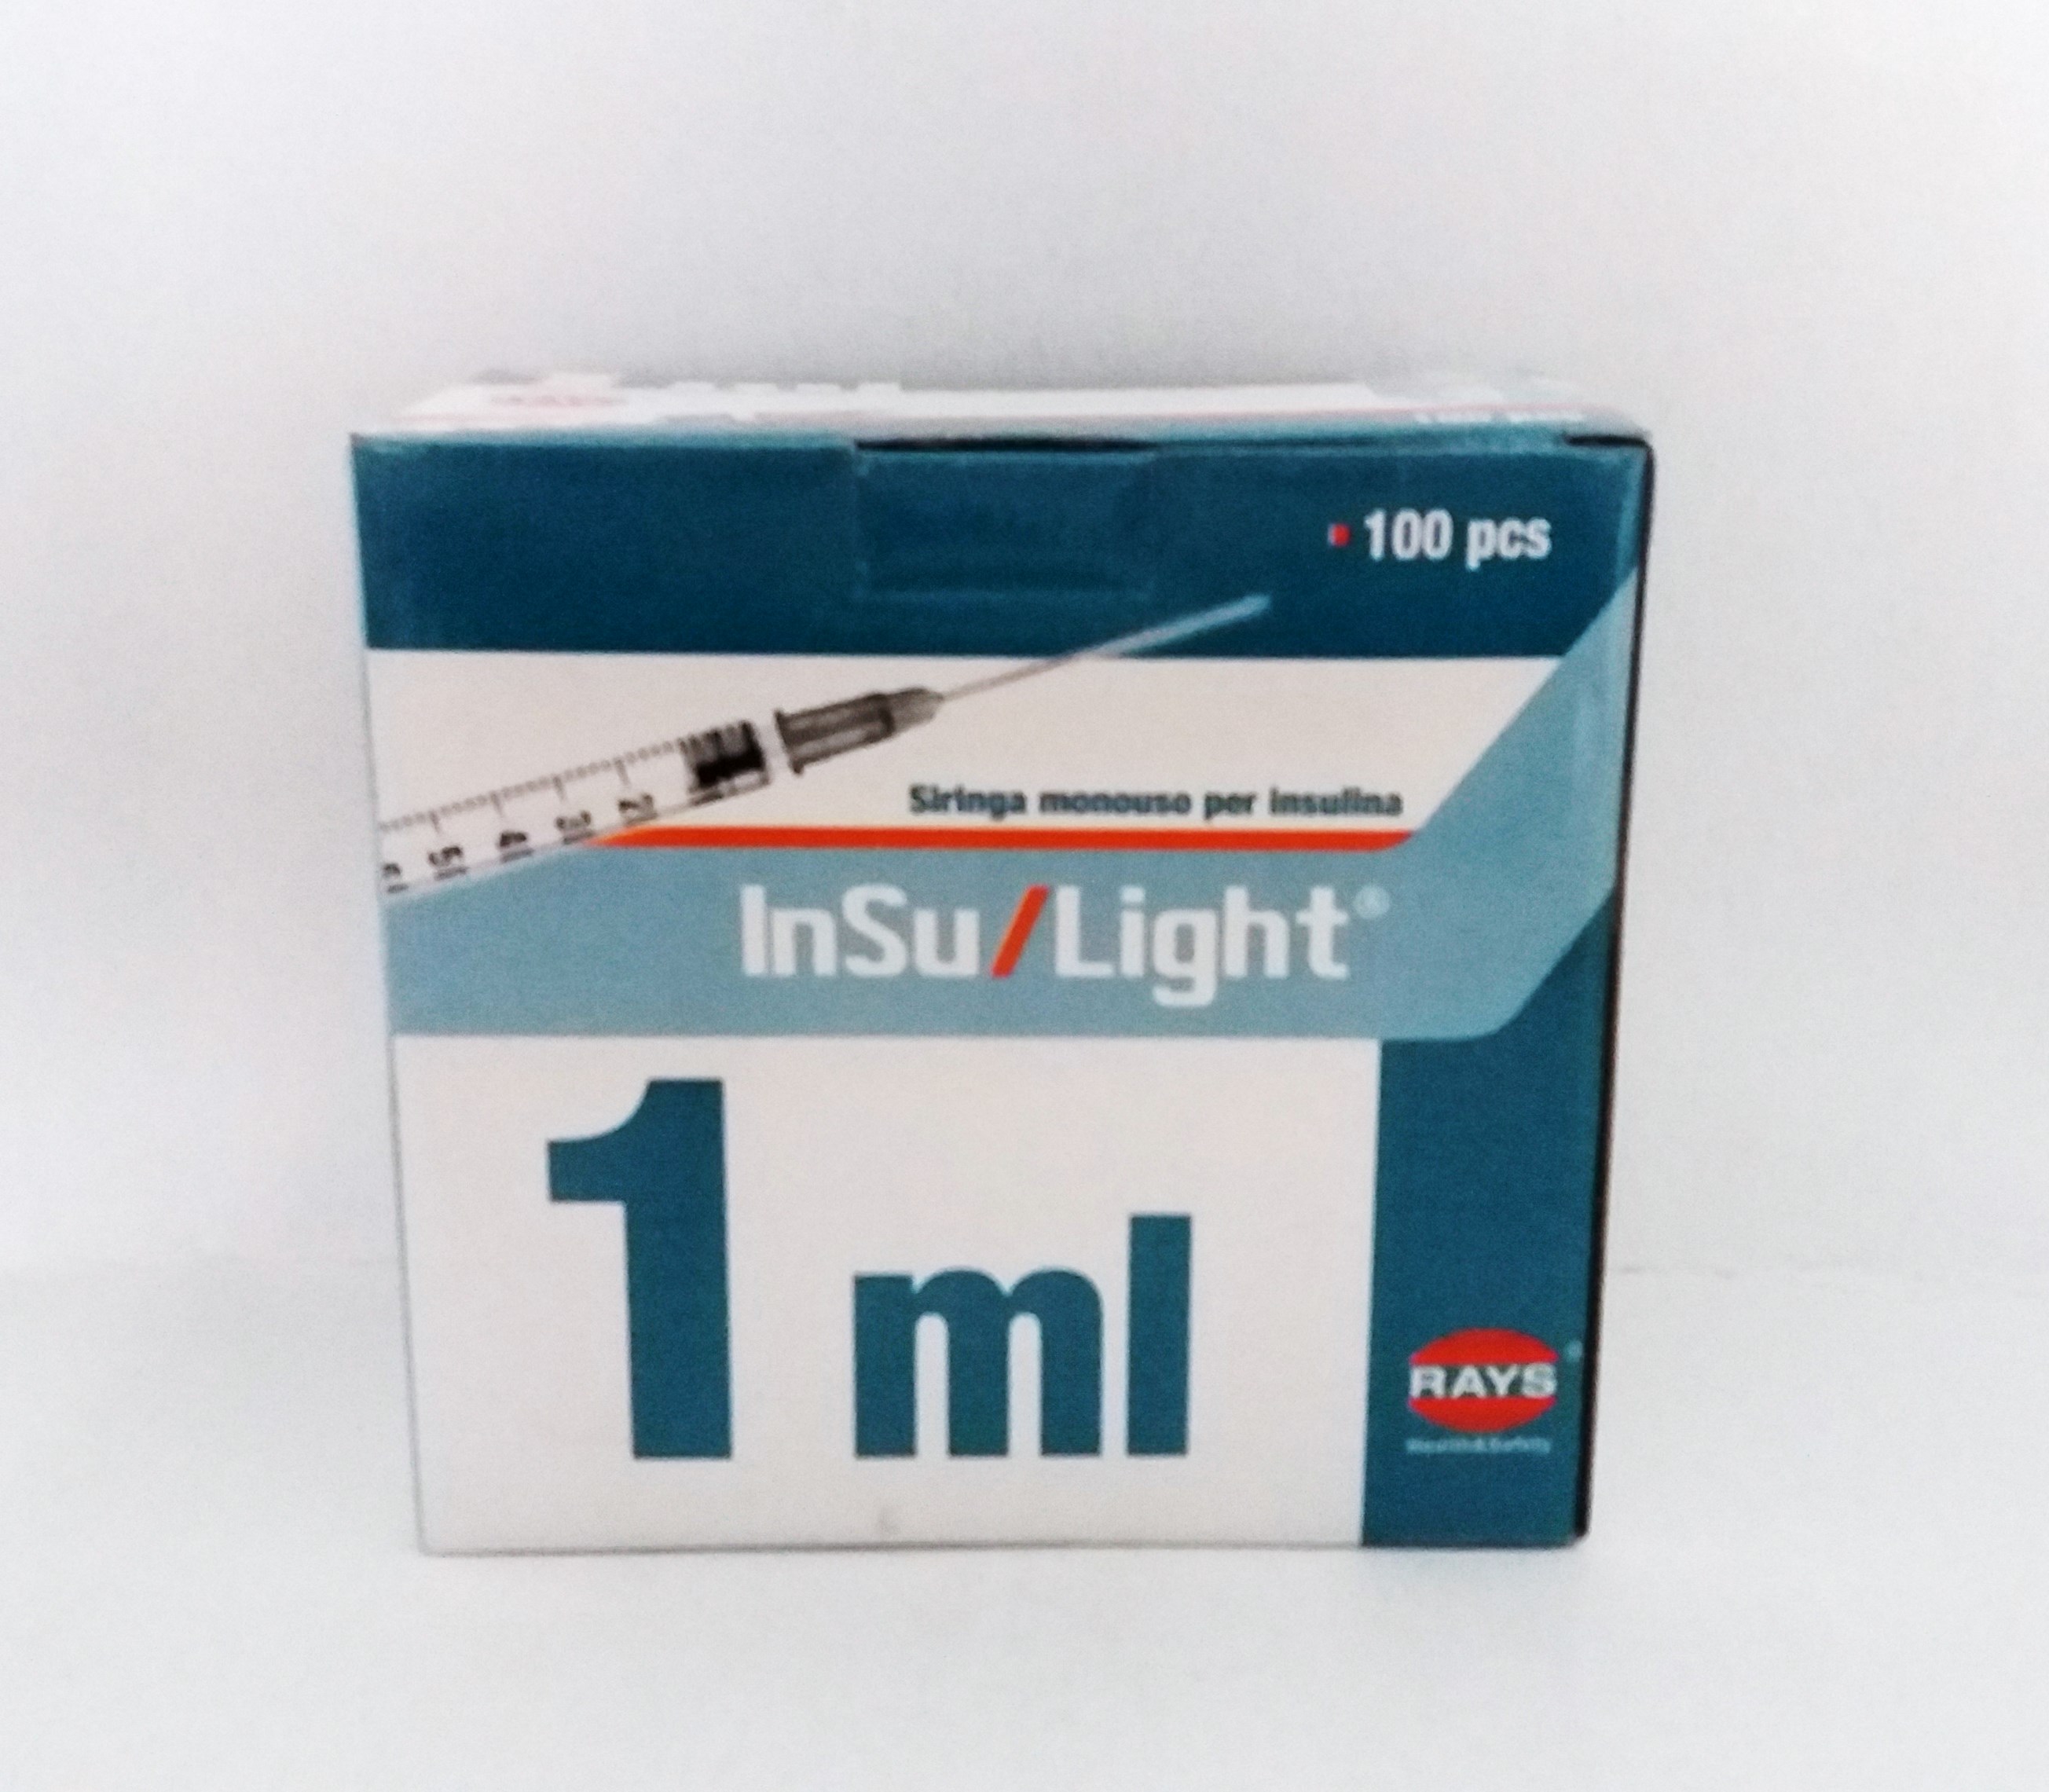 Σύριγγες ινσουλίνης Rays InSu/Light 1 ml, βελόνα 27G x 1/2"